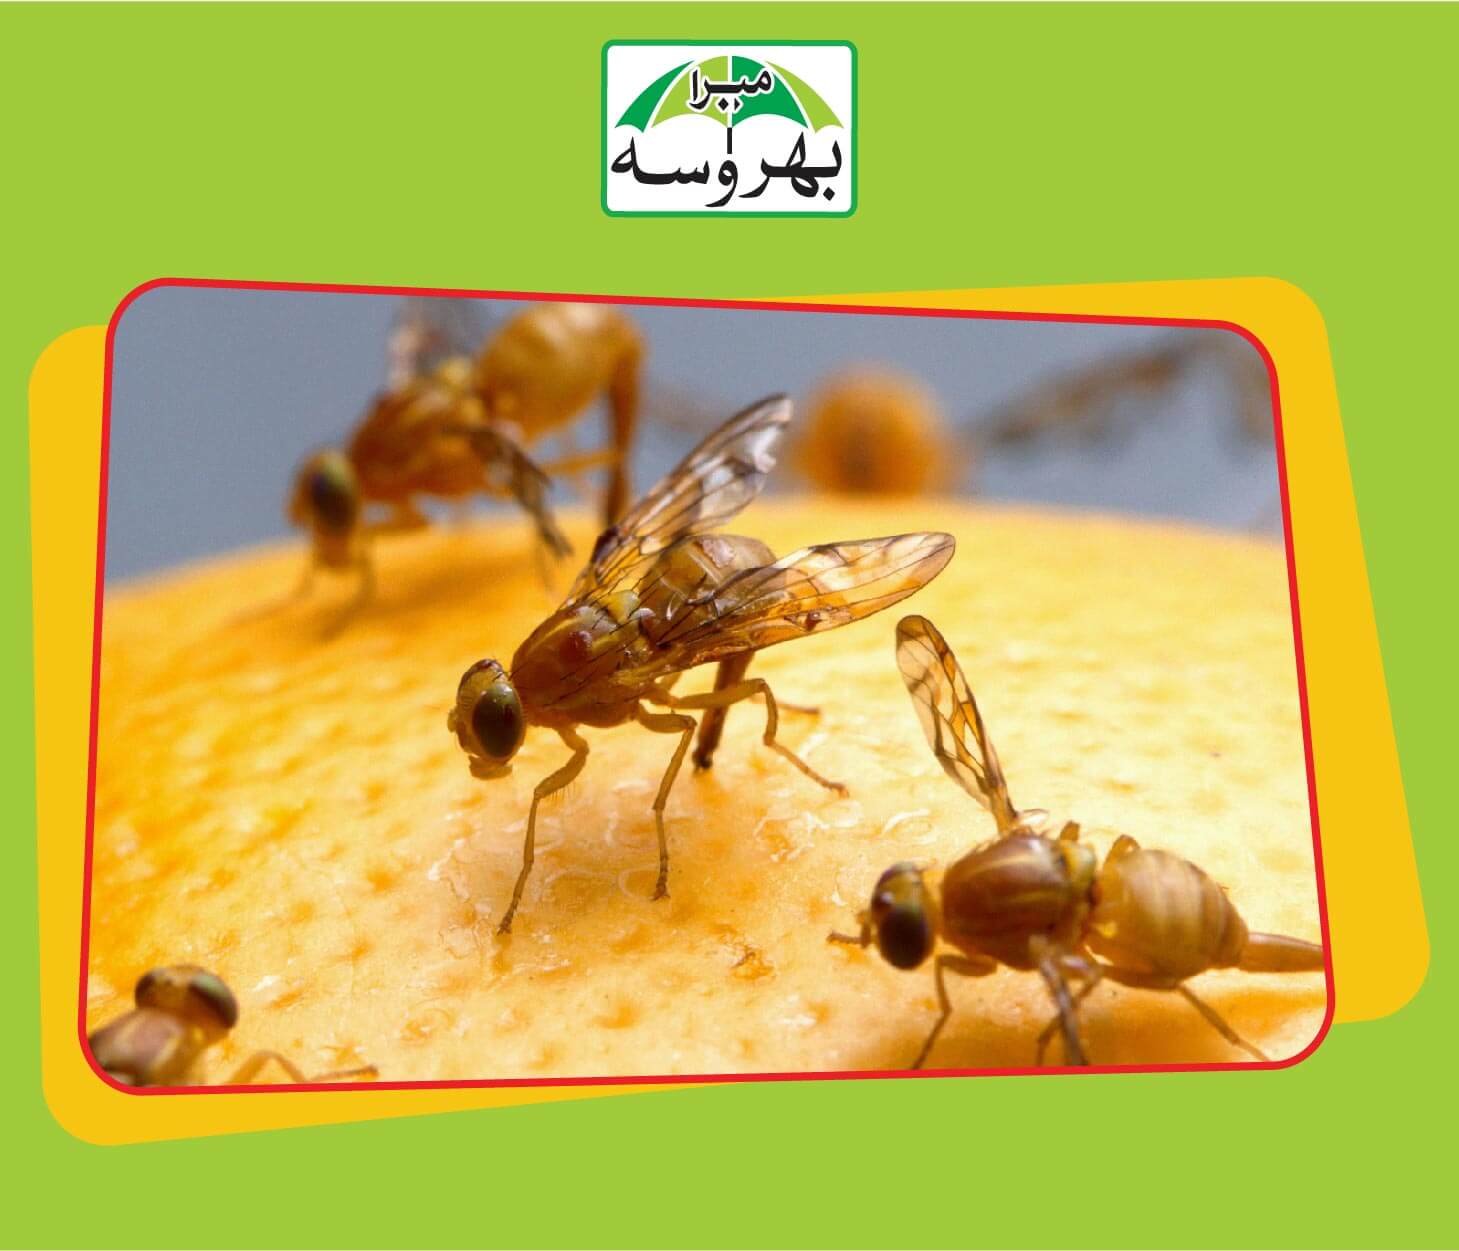 ORANGE fruit fly